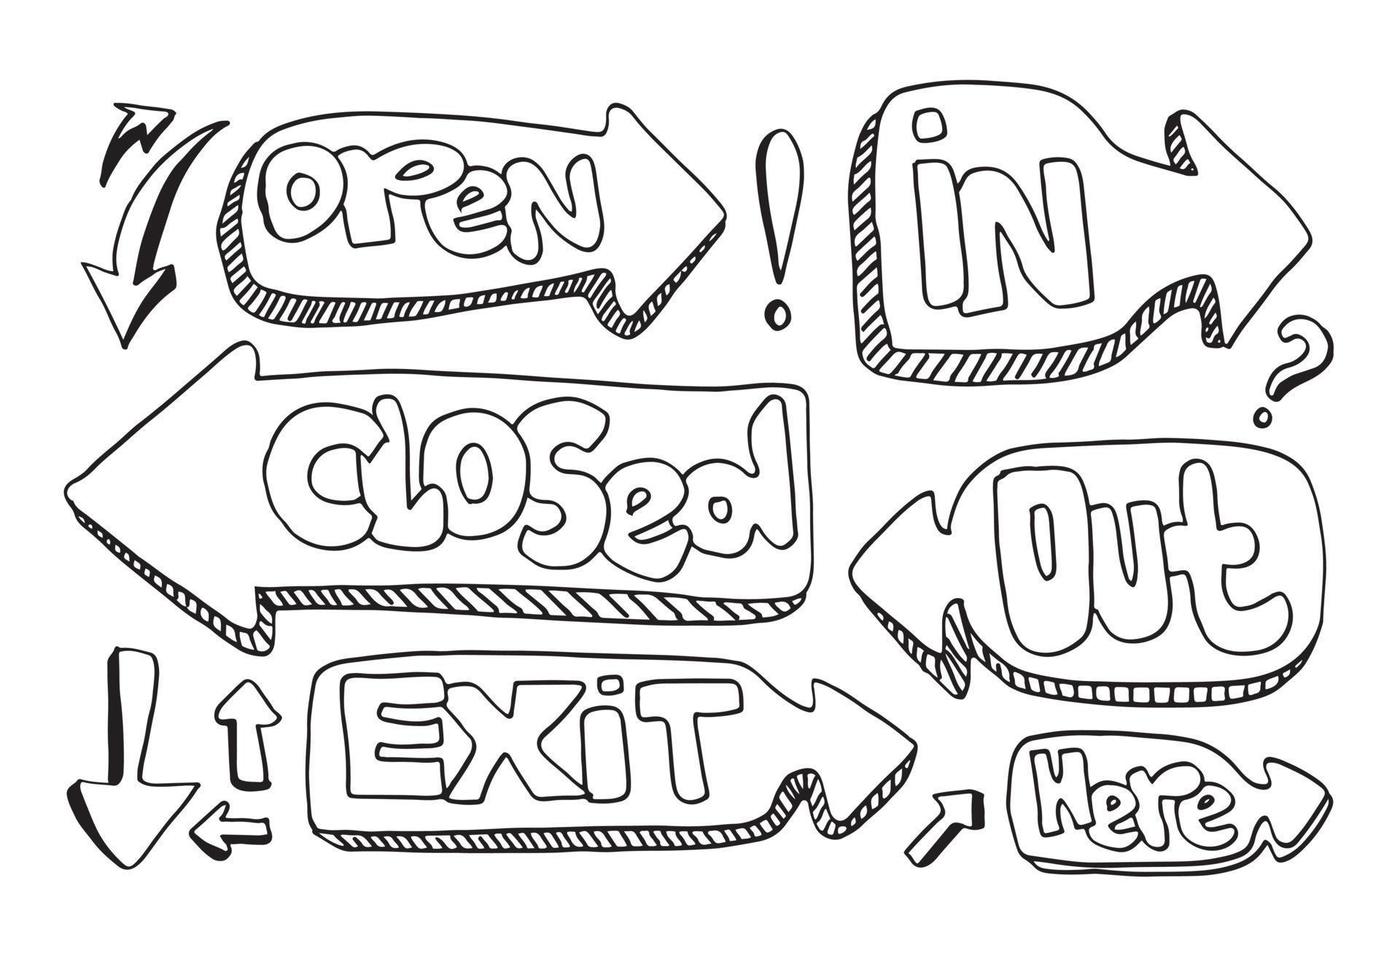 signo abierto cerrado. para uso en cafés, edificios, tiendas y otros vector